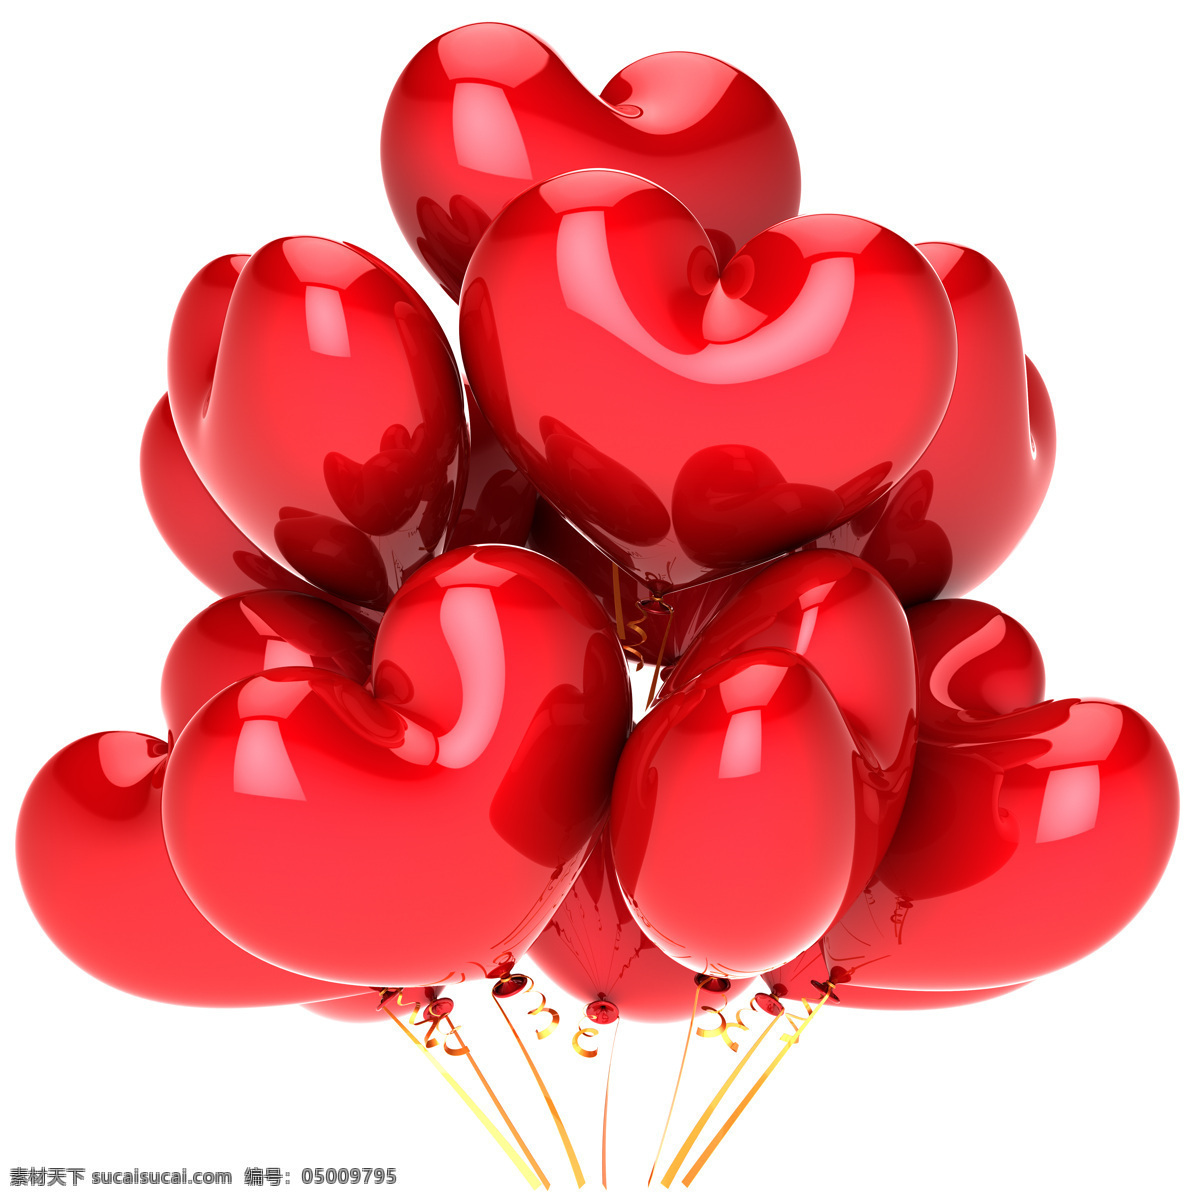 心形气球摄影 气球 立体背景 情人节 节日素材 浪漫节日 底纹背景 其他类别 生活百科 白色